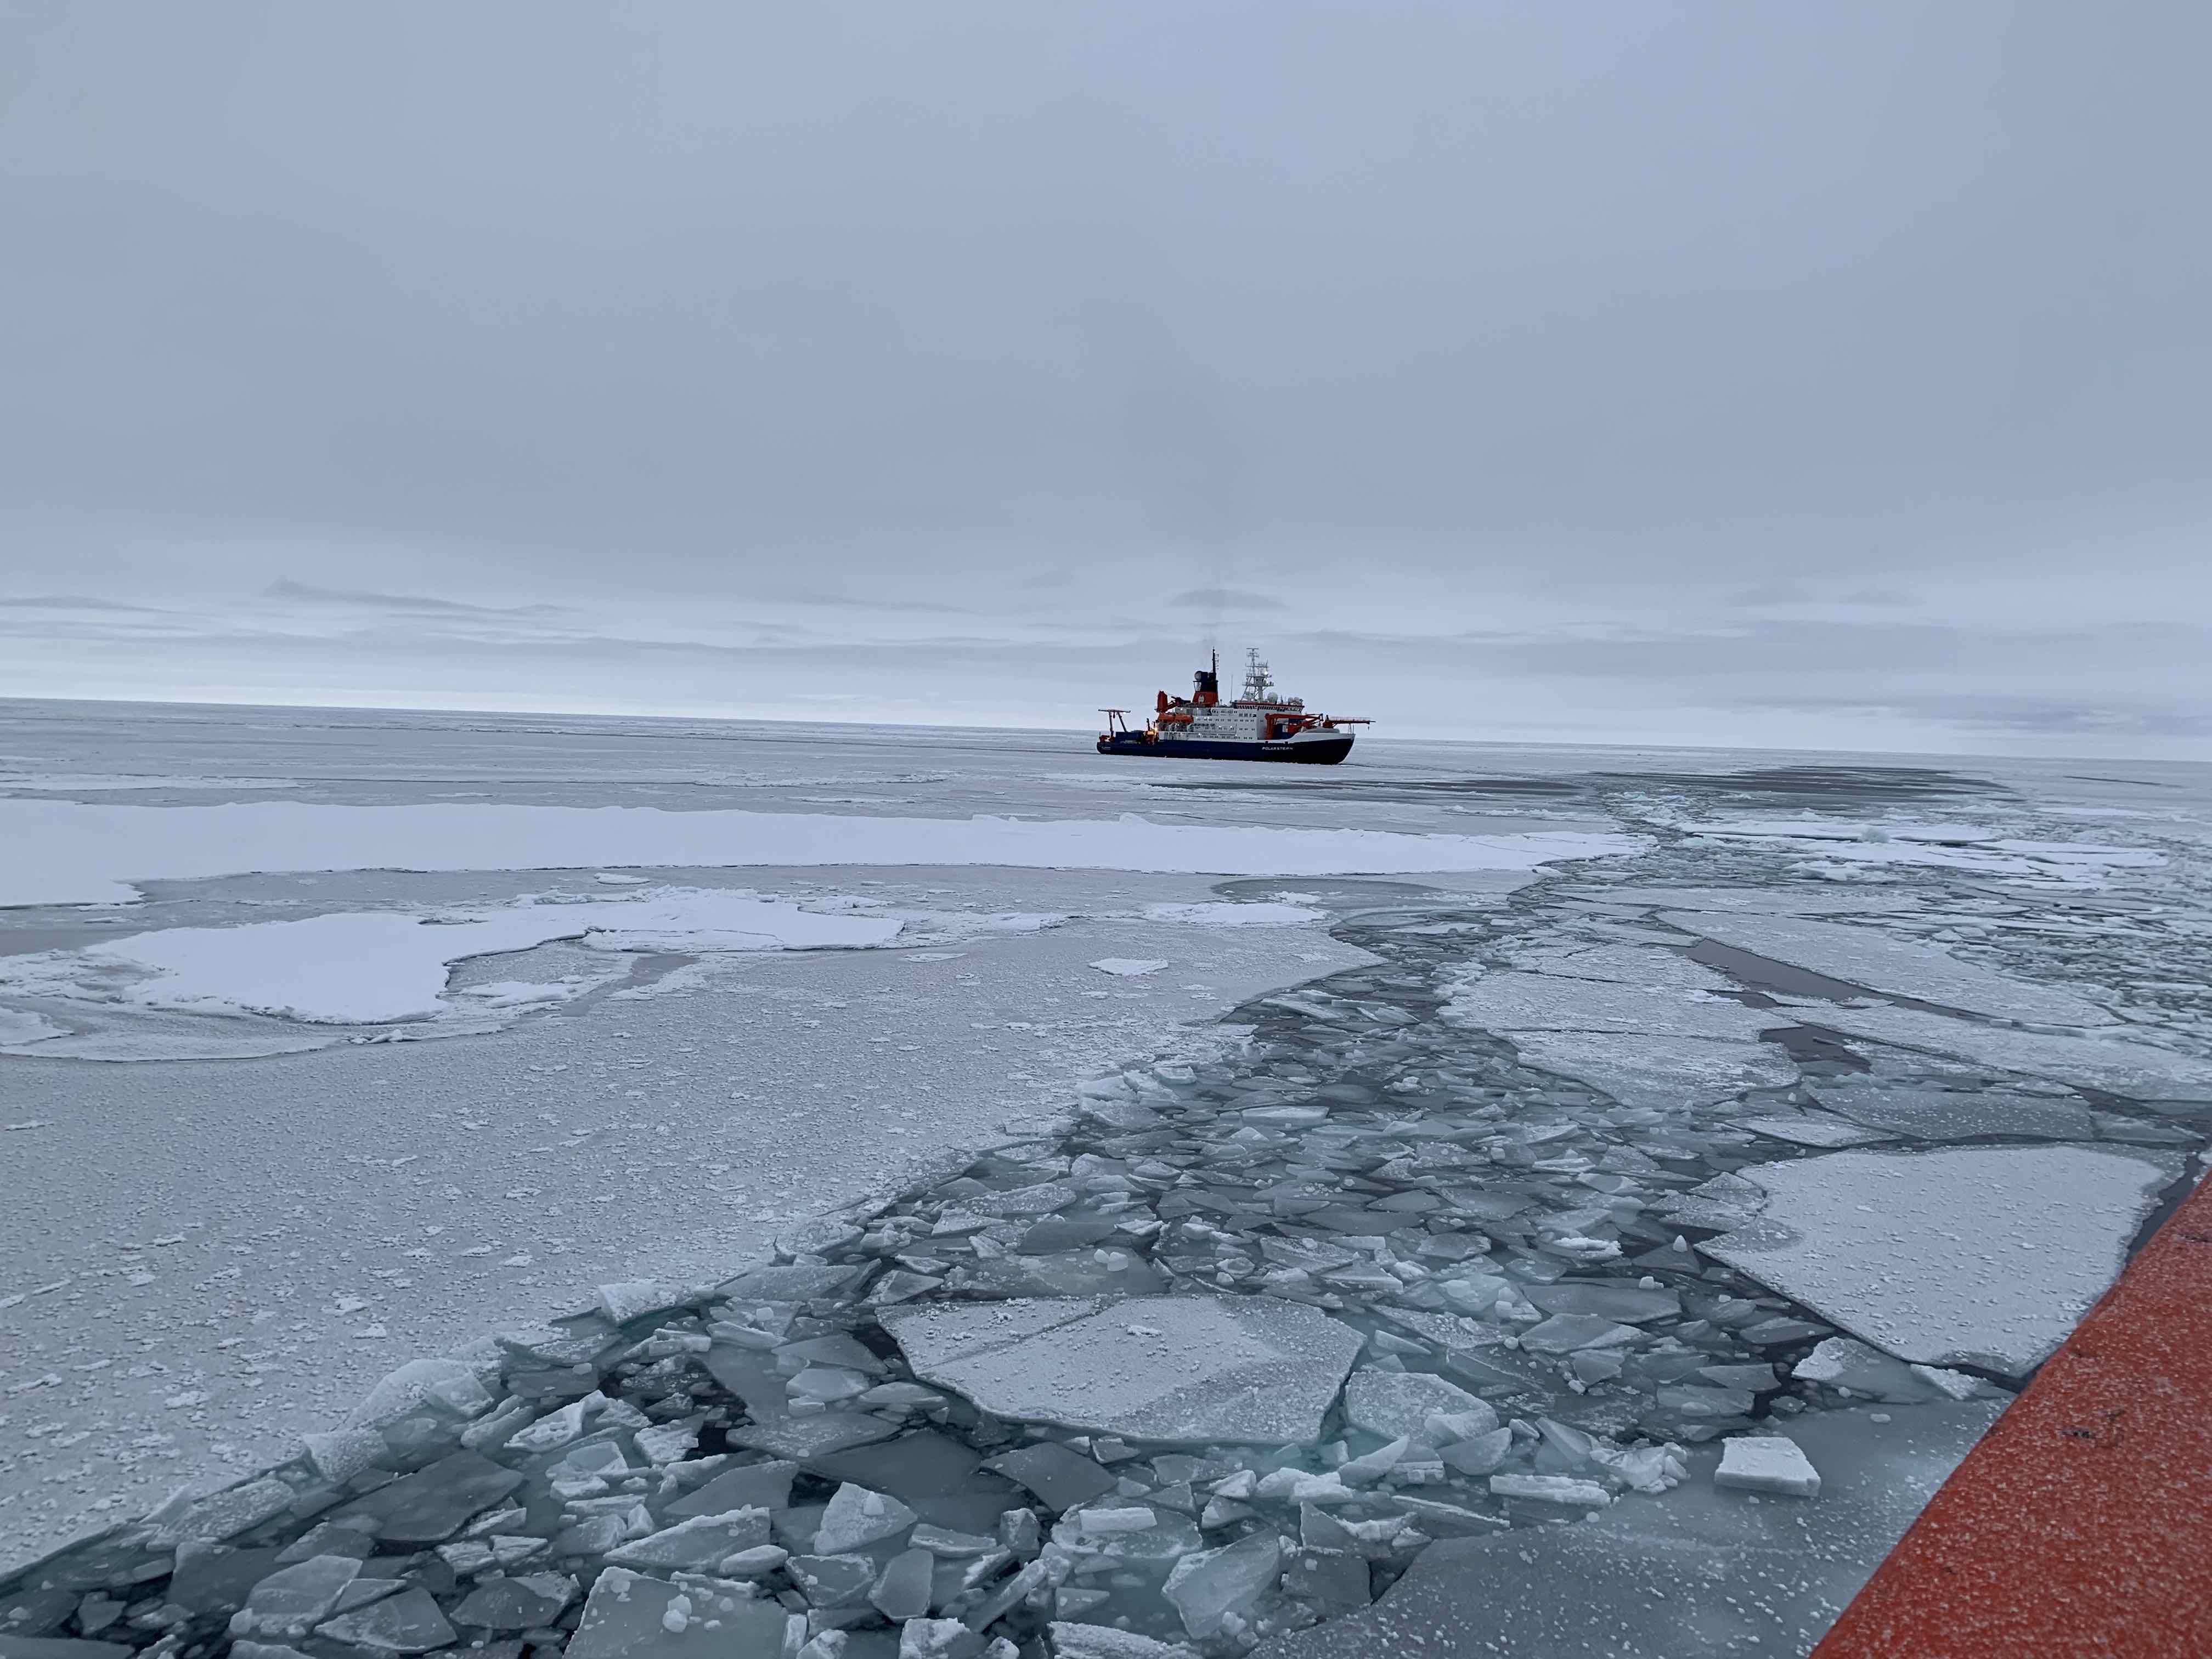 Polarstern and sea ice